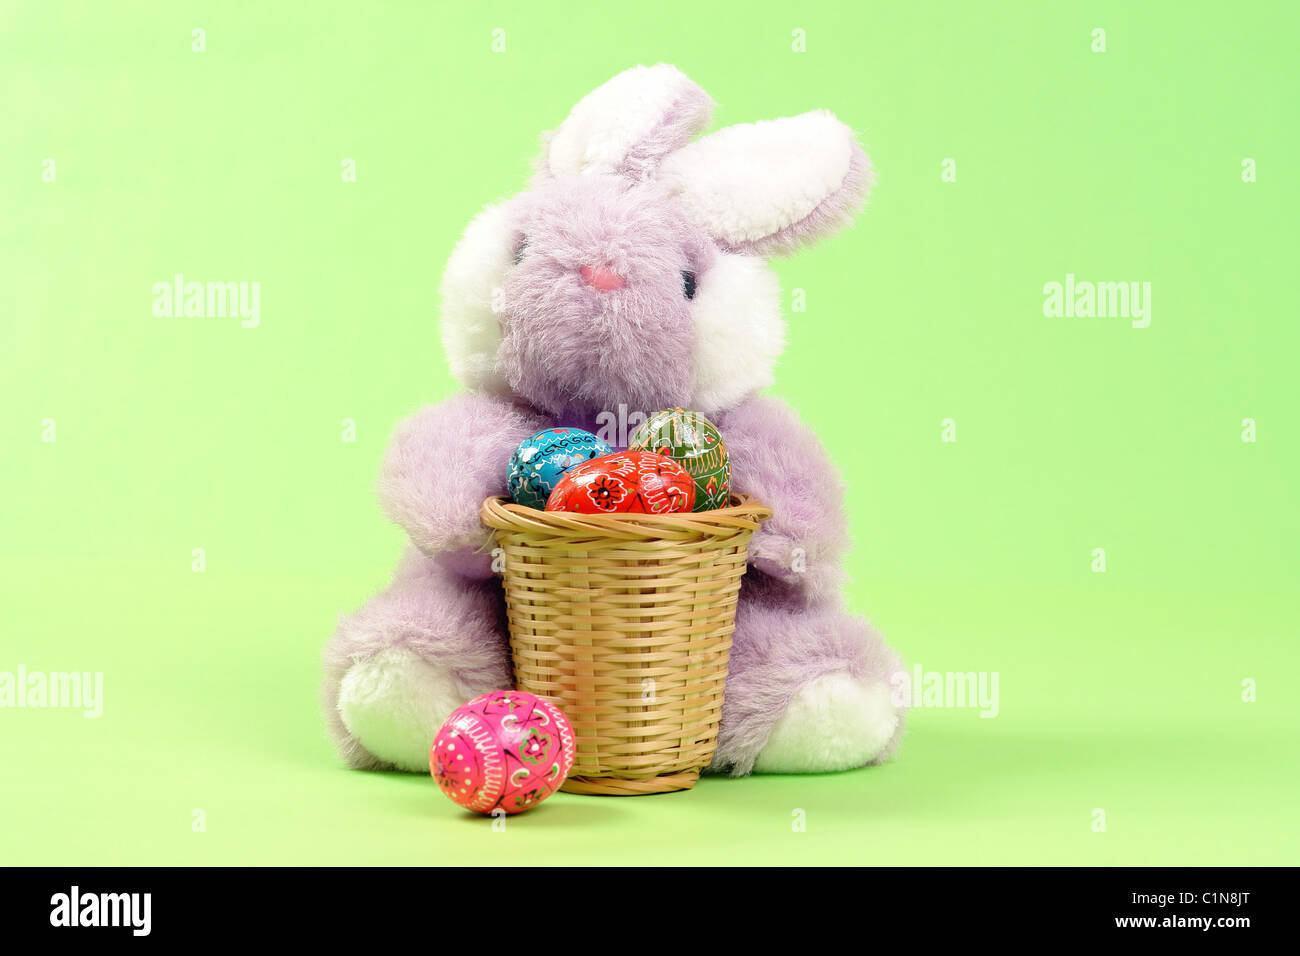 Lapin de Pâques assis avec un panier plein d'œufs de Pâques sur fond vert clair Banque D'Images